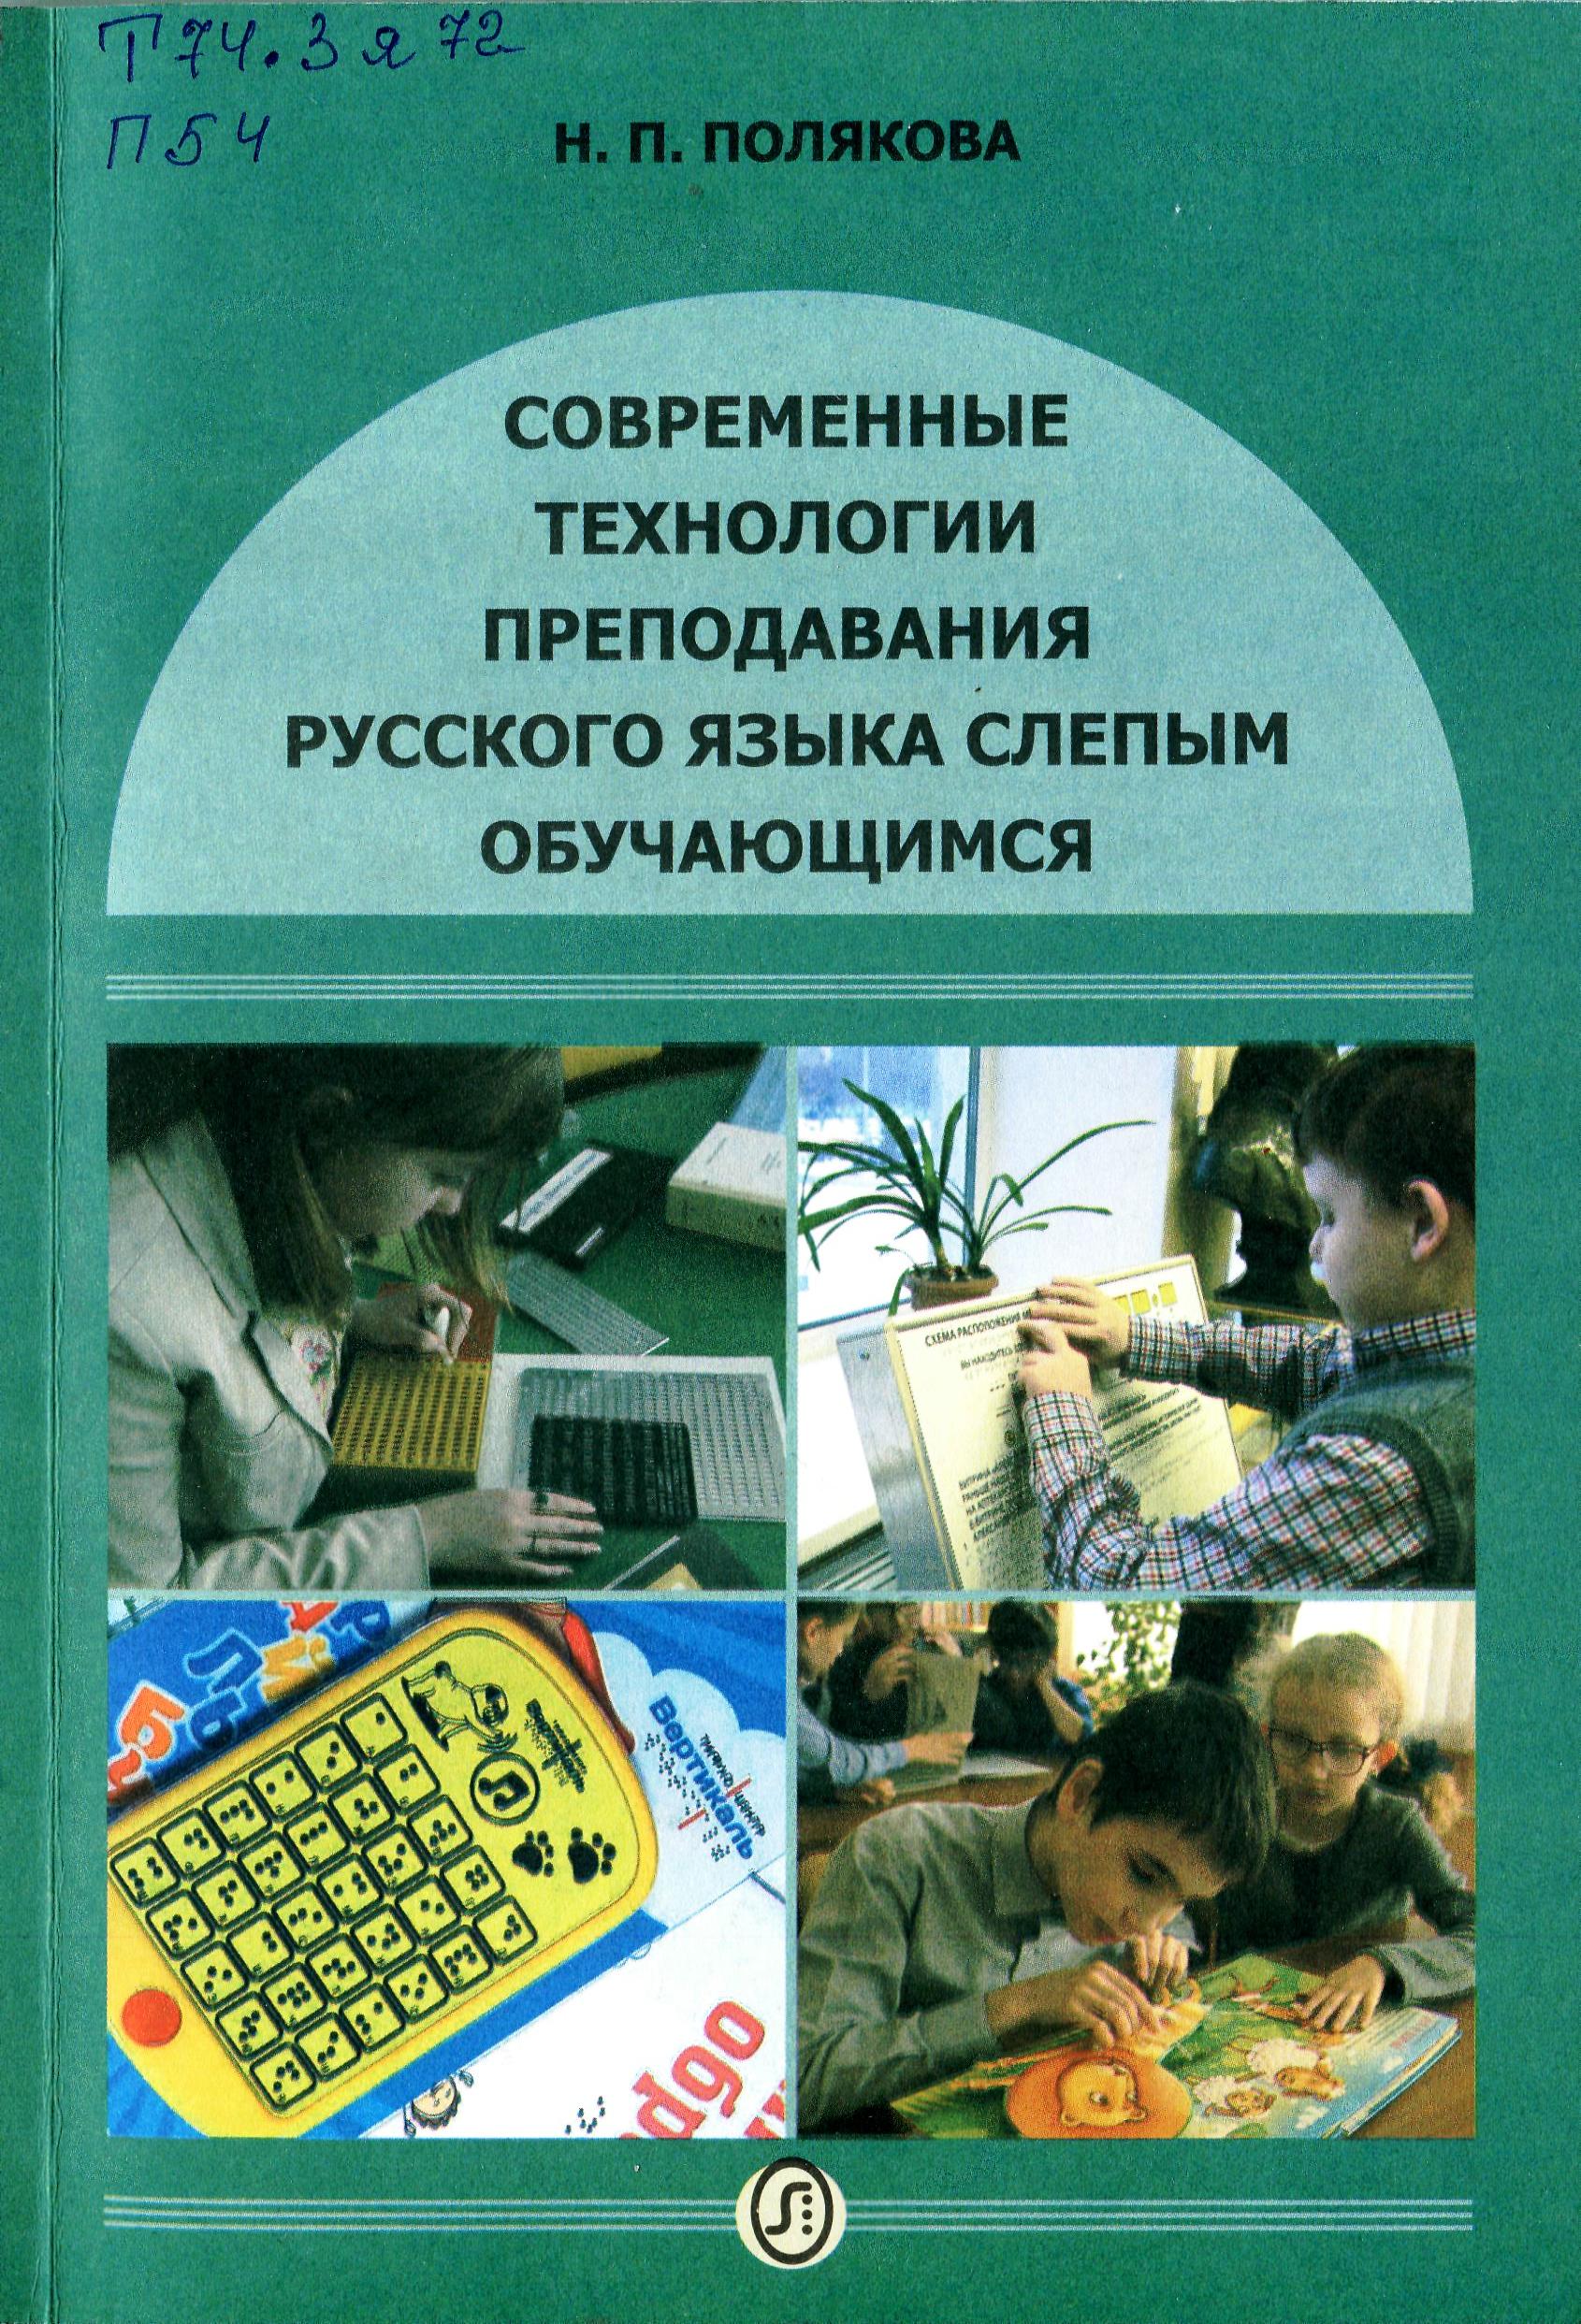 Особенности преподавания русского языка слепым и слабовидящим обучающимся